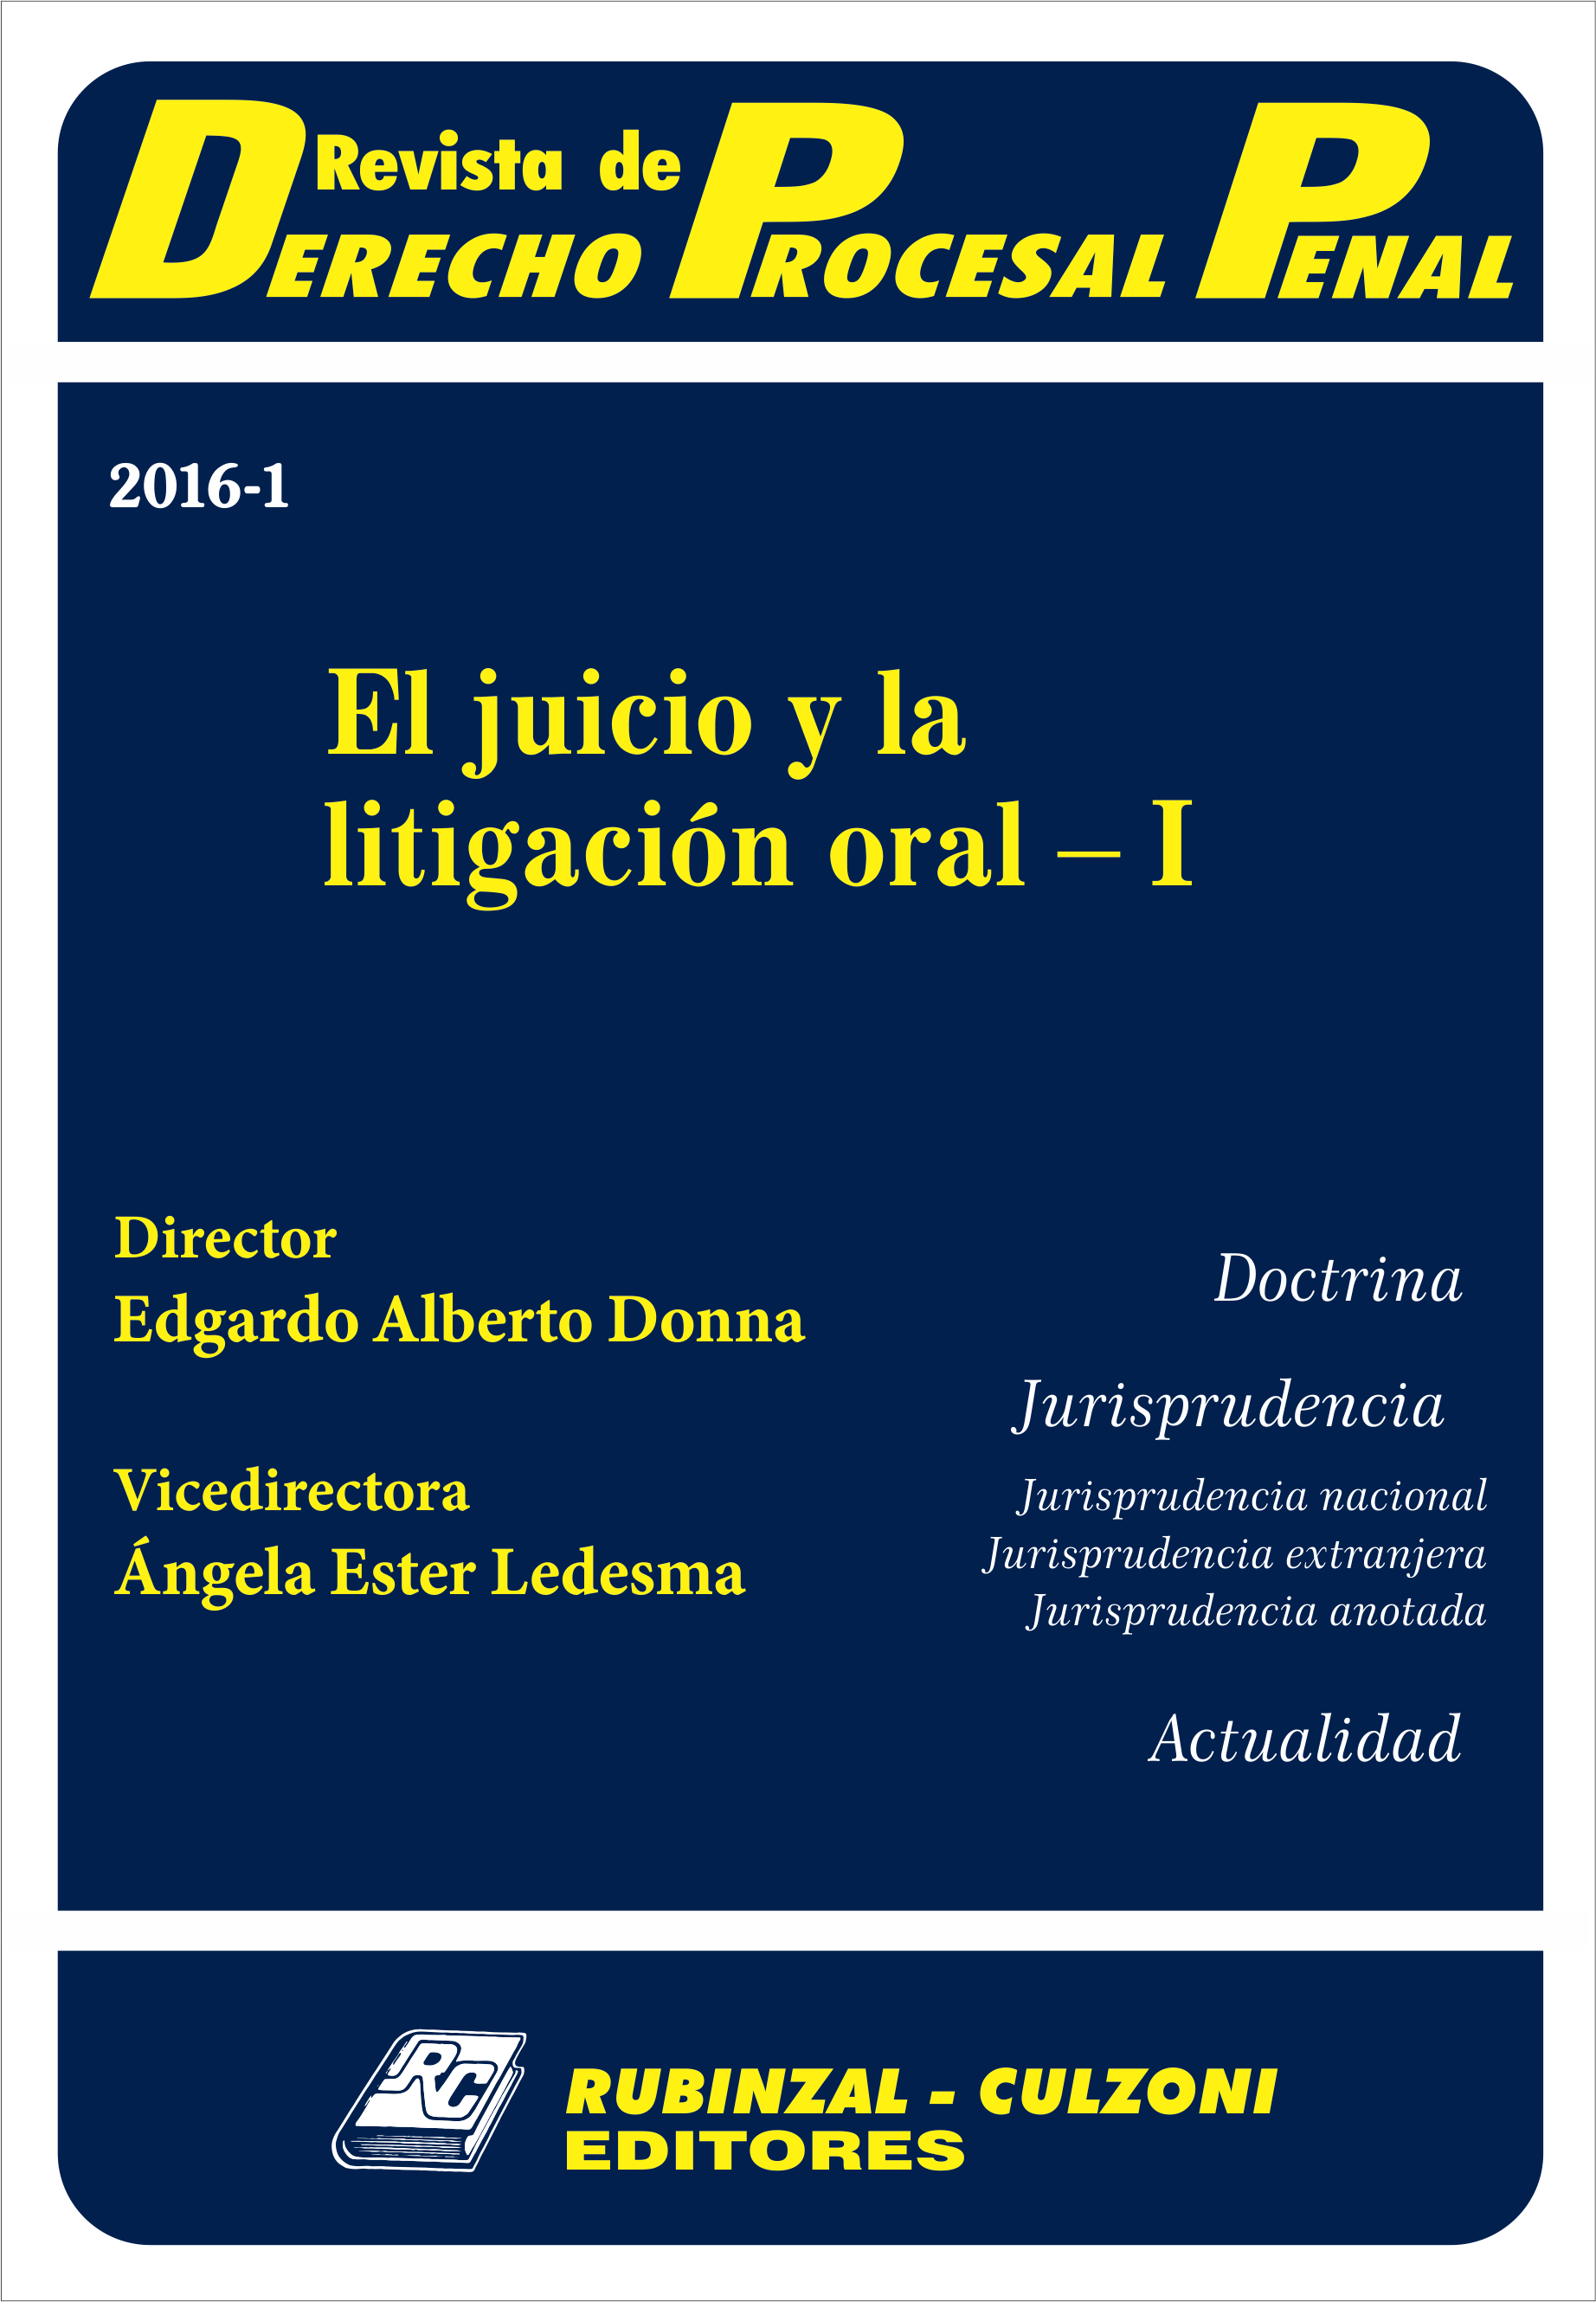 Revista de Derecho Procesal Penal - El juicio y la litigación oral - I